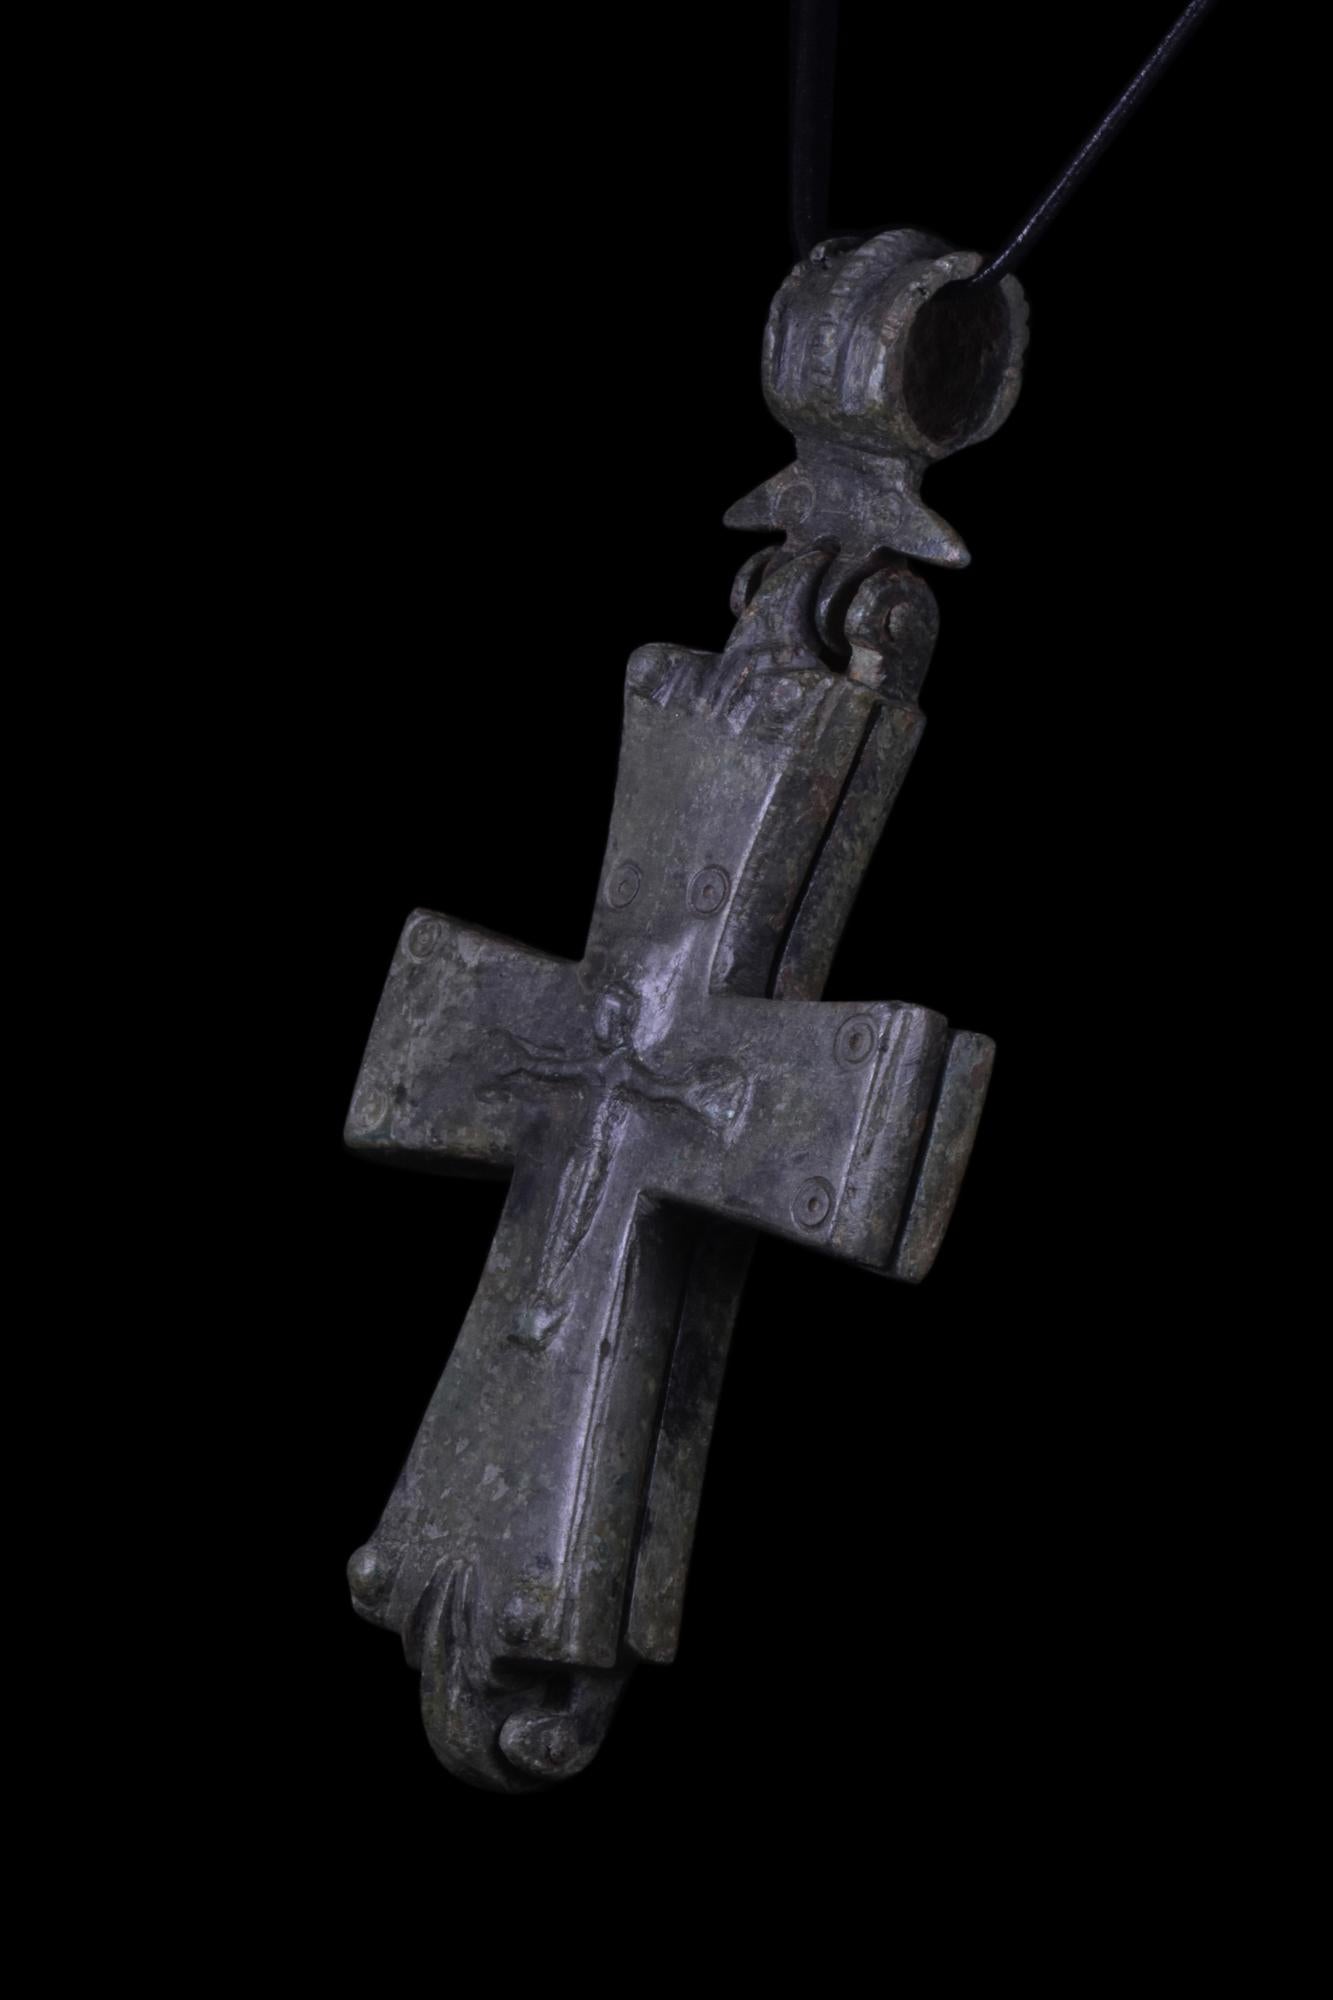 Ein byzantinischer Reliquienkreuzanhänger aus Bronzeguss mit zwei kreuzförmigen Platten, die sich zur Aufbewahrung von Reliquien oder Dokumenten öffnen lassen und auf beiden Seiten den gekreuzigten Christus darstellen. Reliquien, die physischen